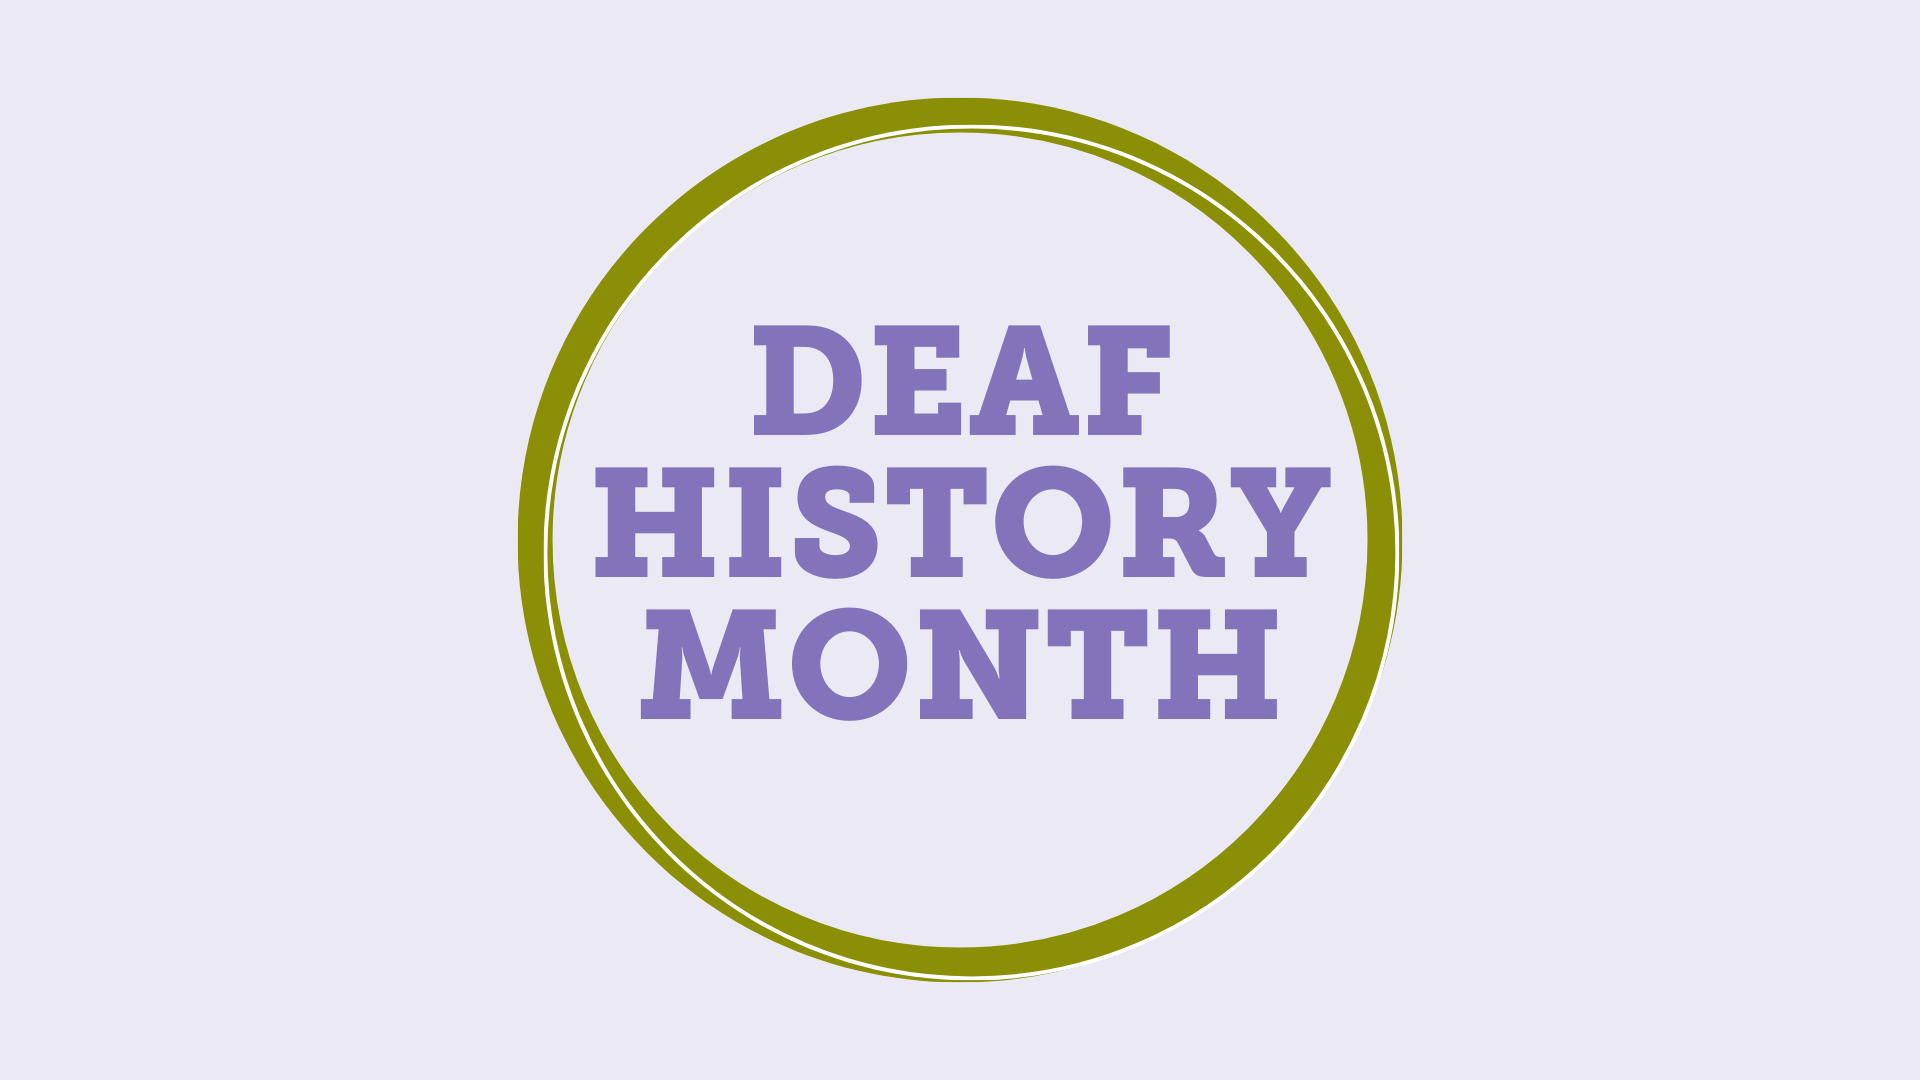 Celebrating Deaf History